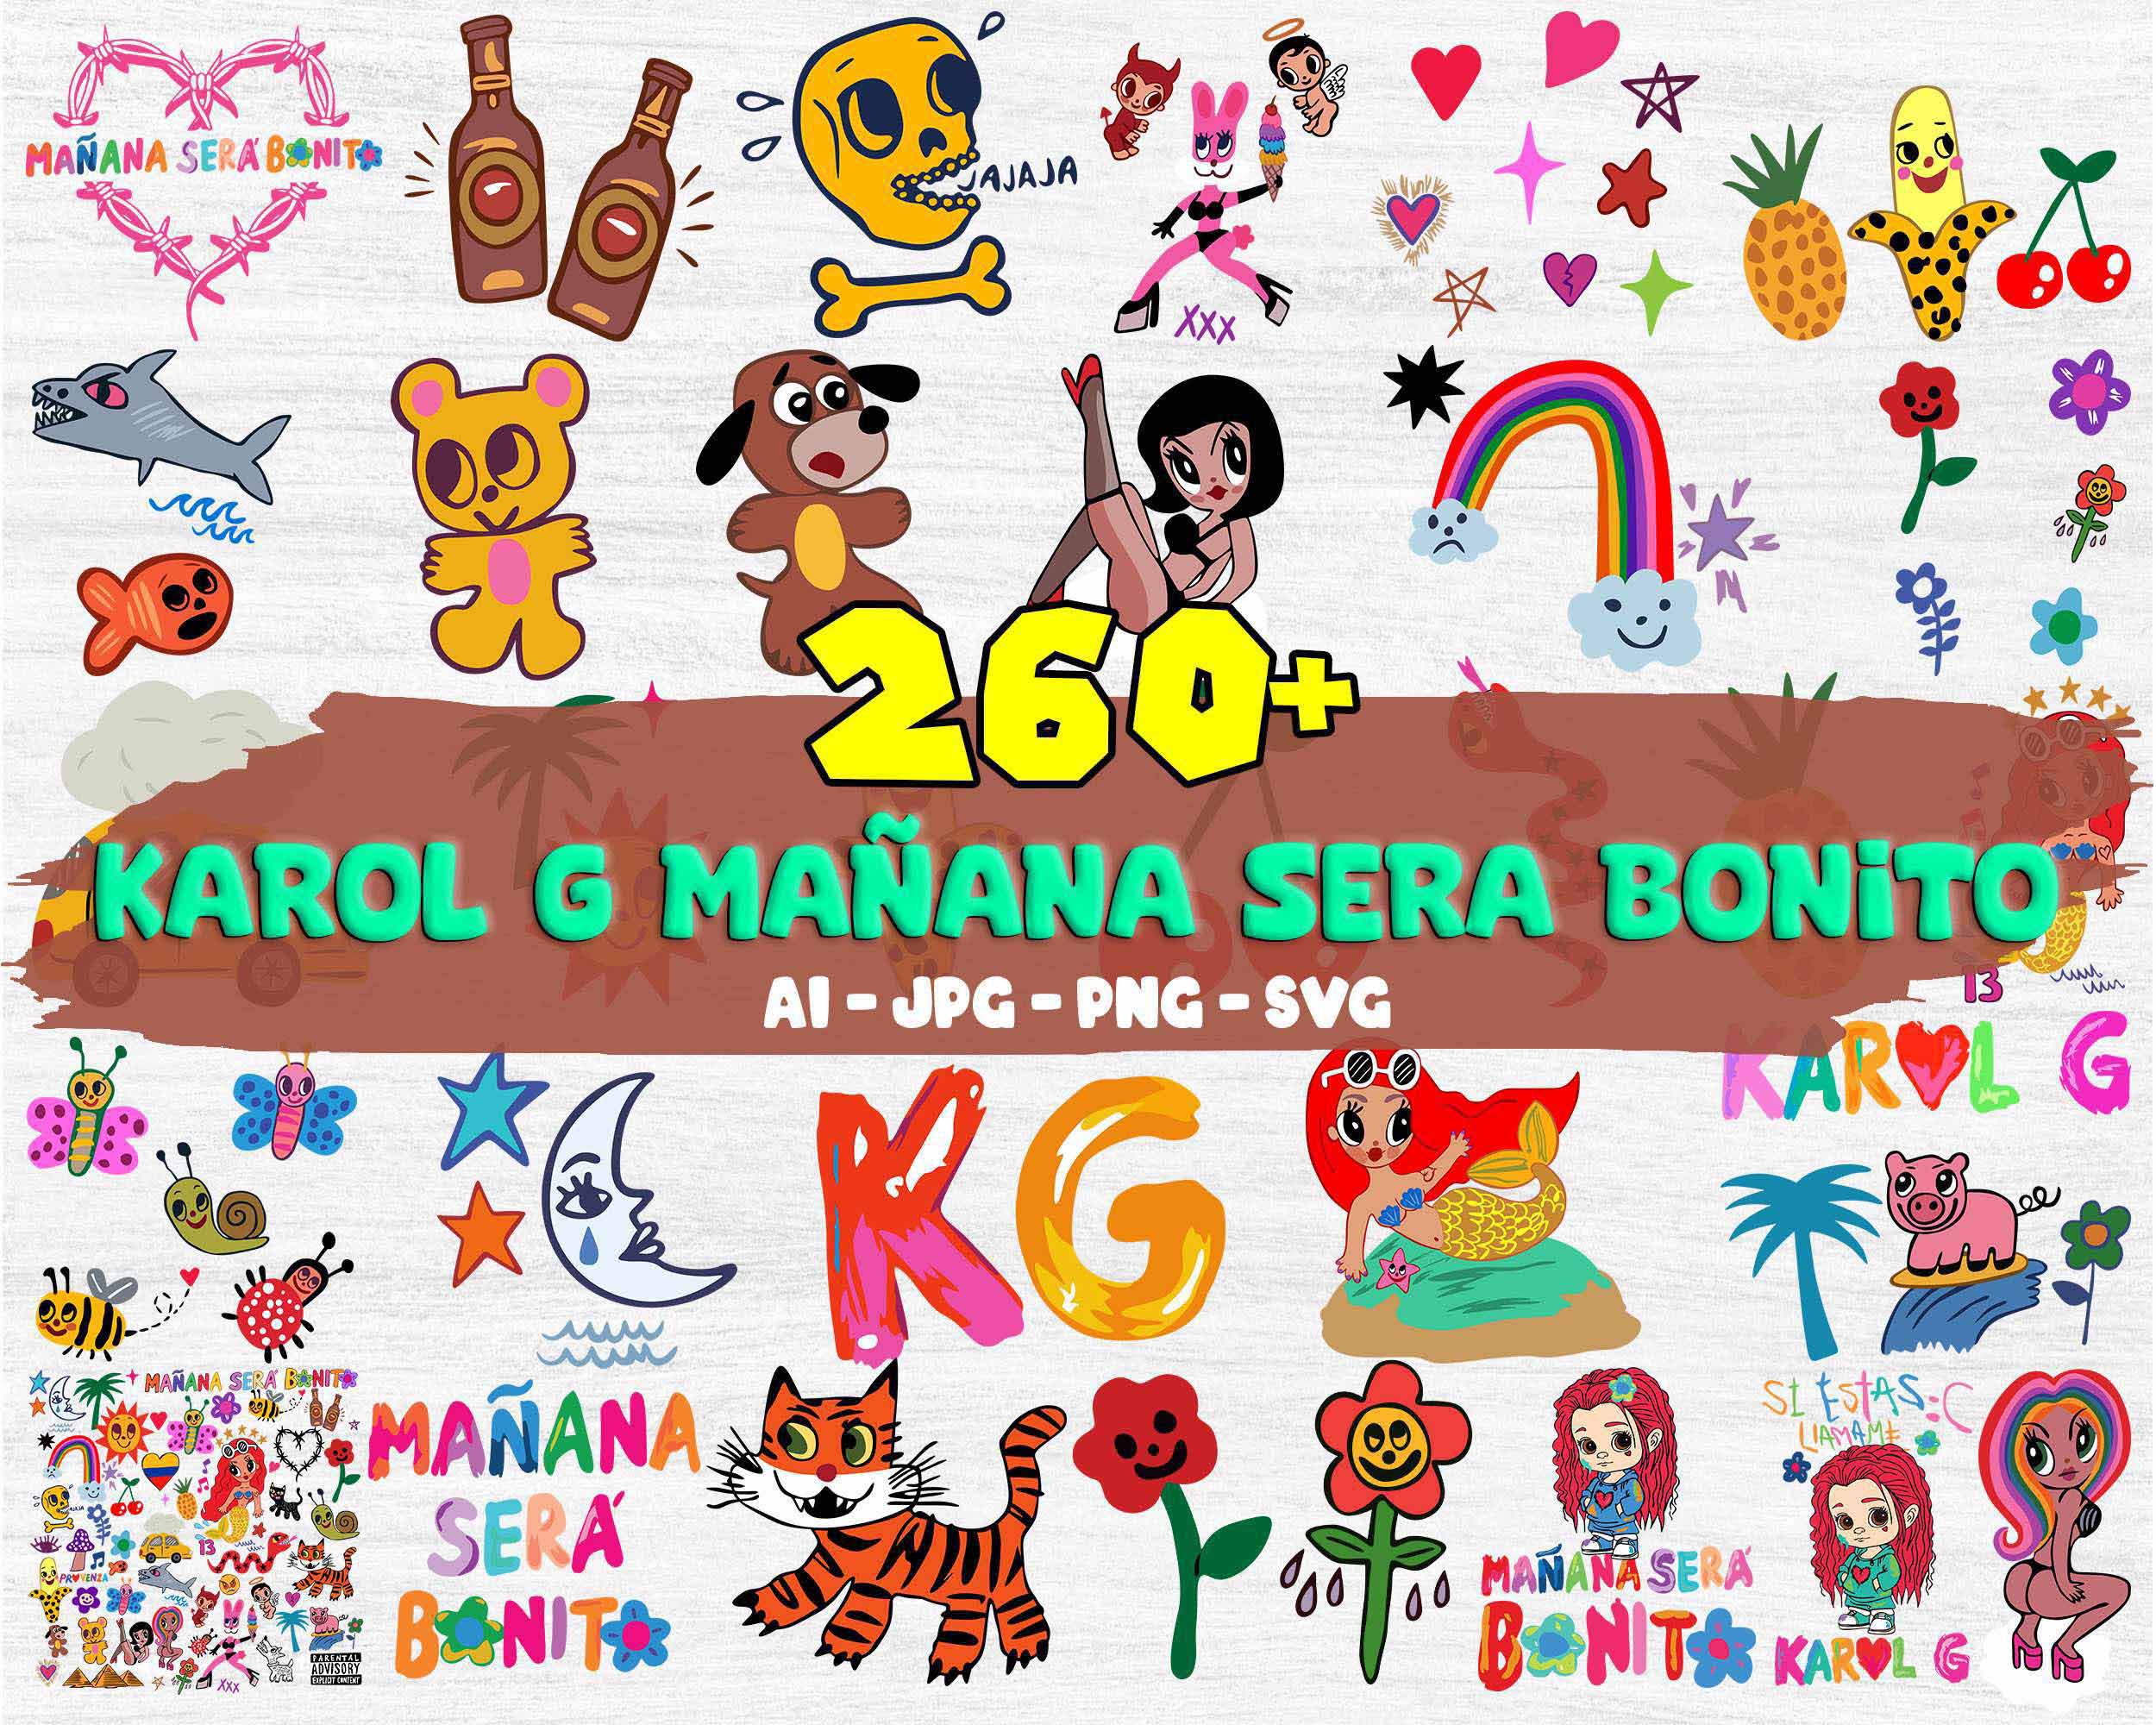 260+ Bundle Karol G Manana Sera Bonito SVG Files For Cricut, Karol G SVG, Tomorrow Will Be Nice SVG